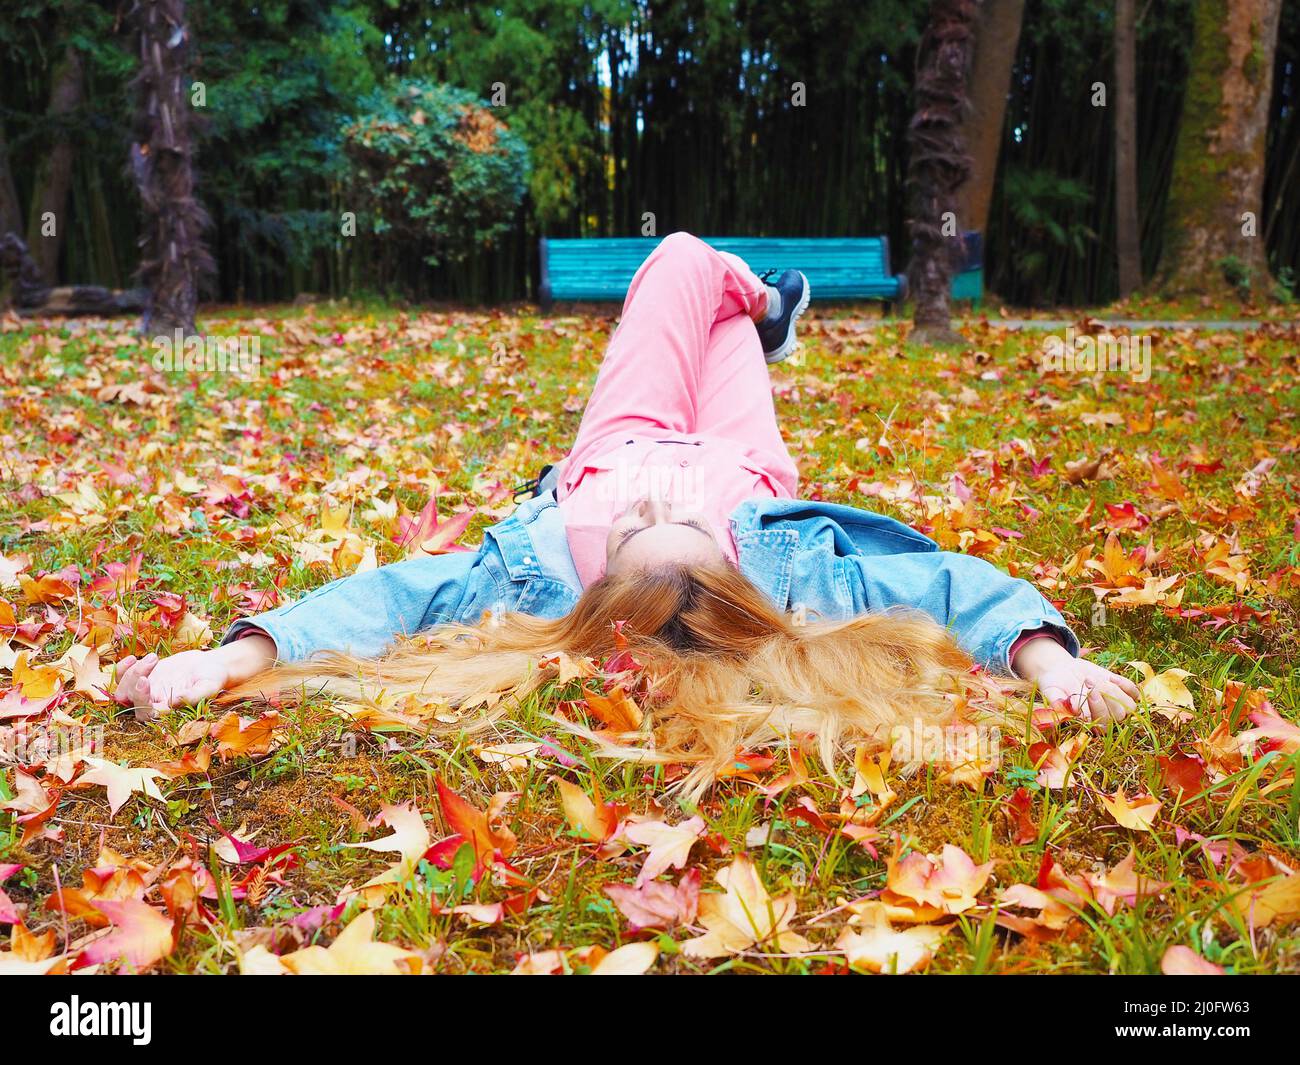 Bambina rossa si trova con le gambe incrociate in un parco su un prato cosparso di foglie d'autunno Foto Stock